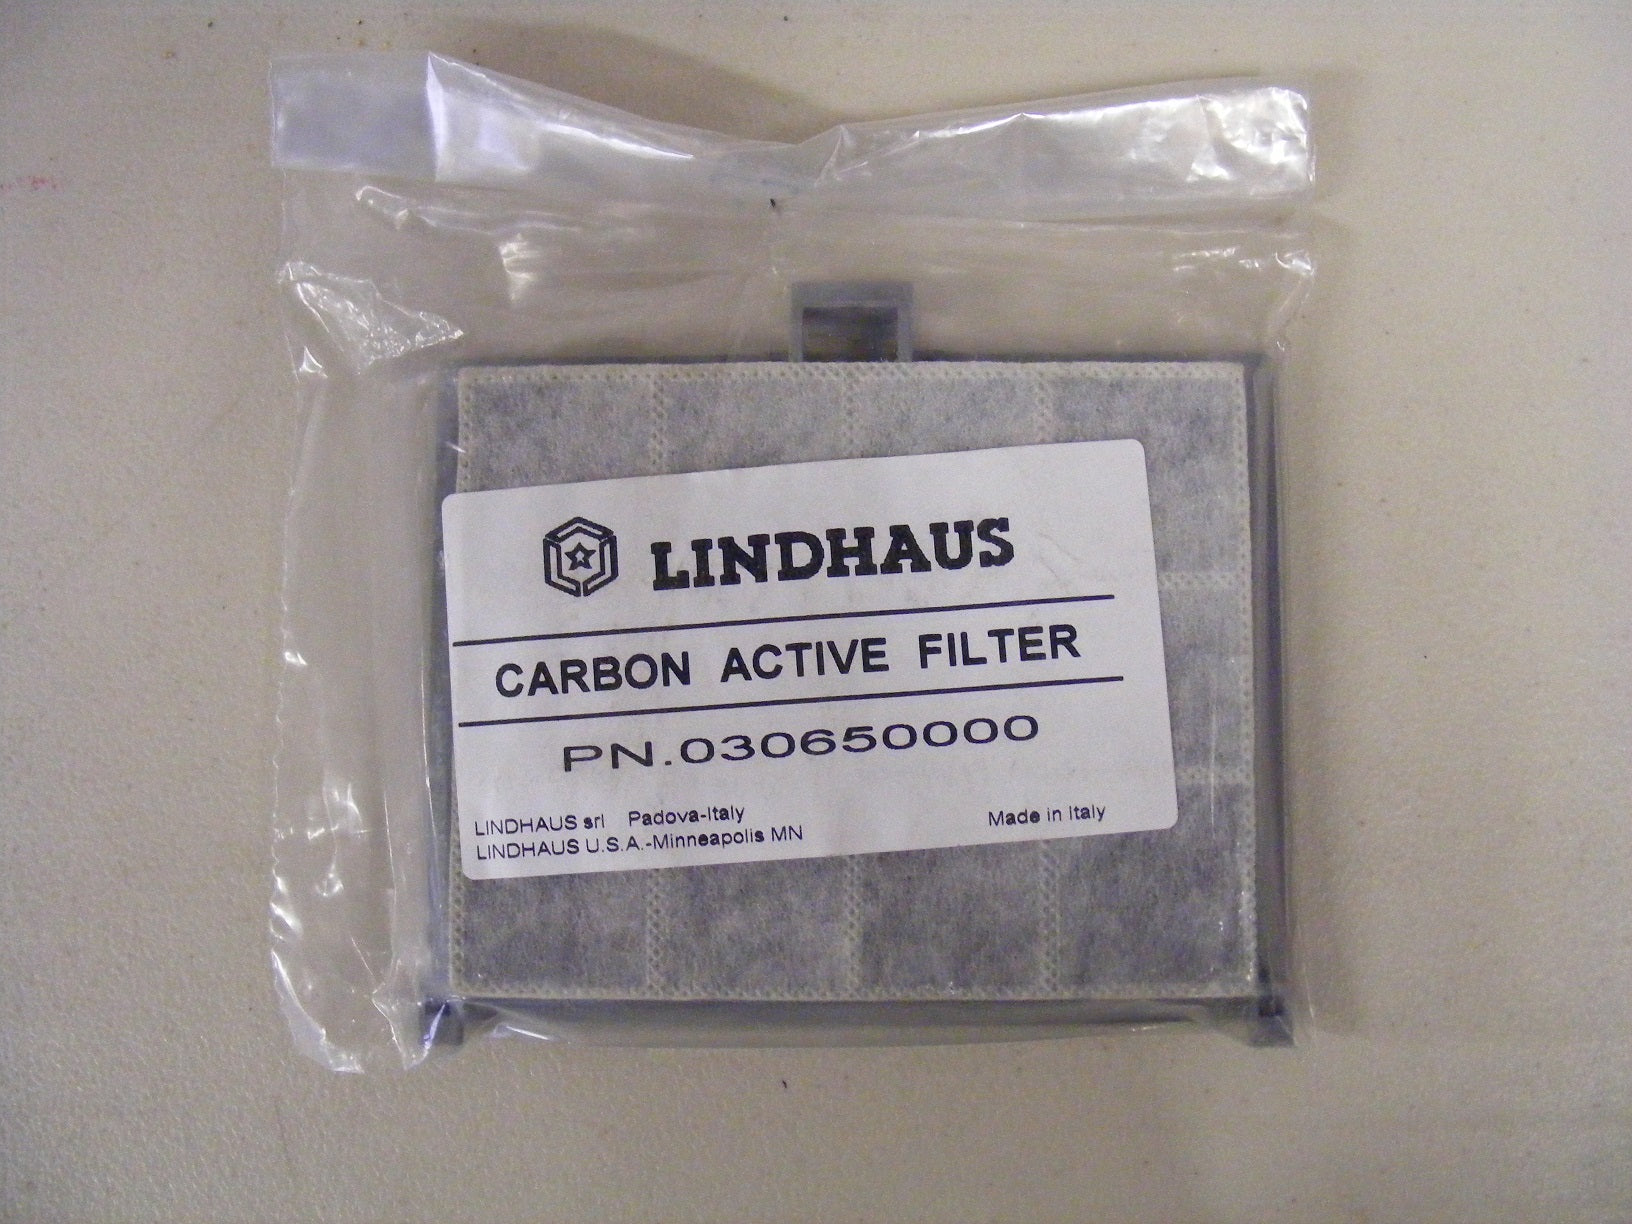 Lindhaus Lha03 Carbon active filter 030650000